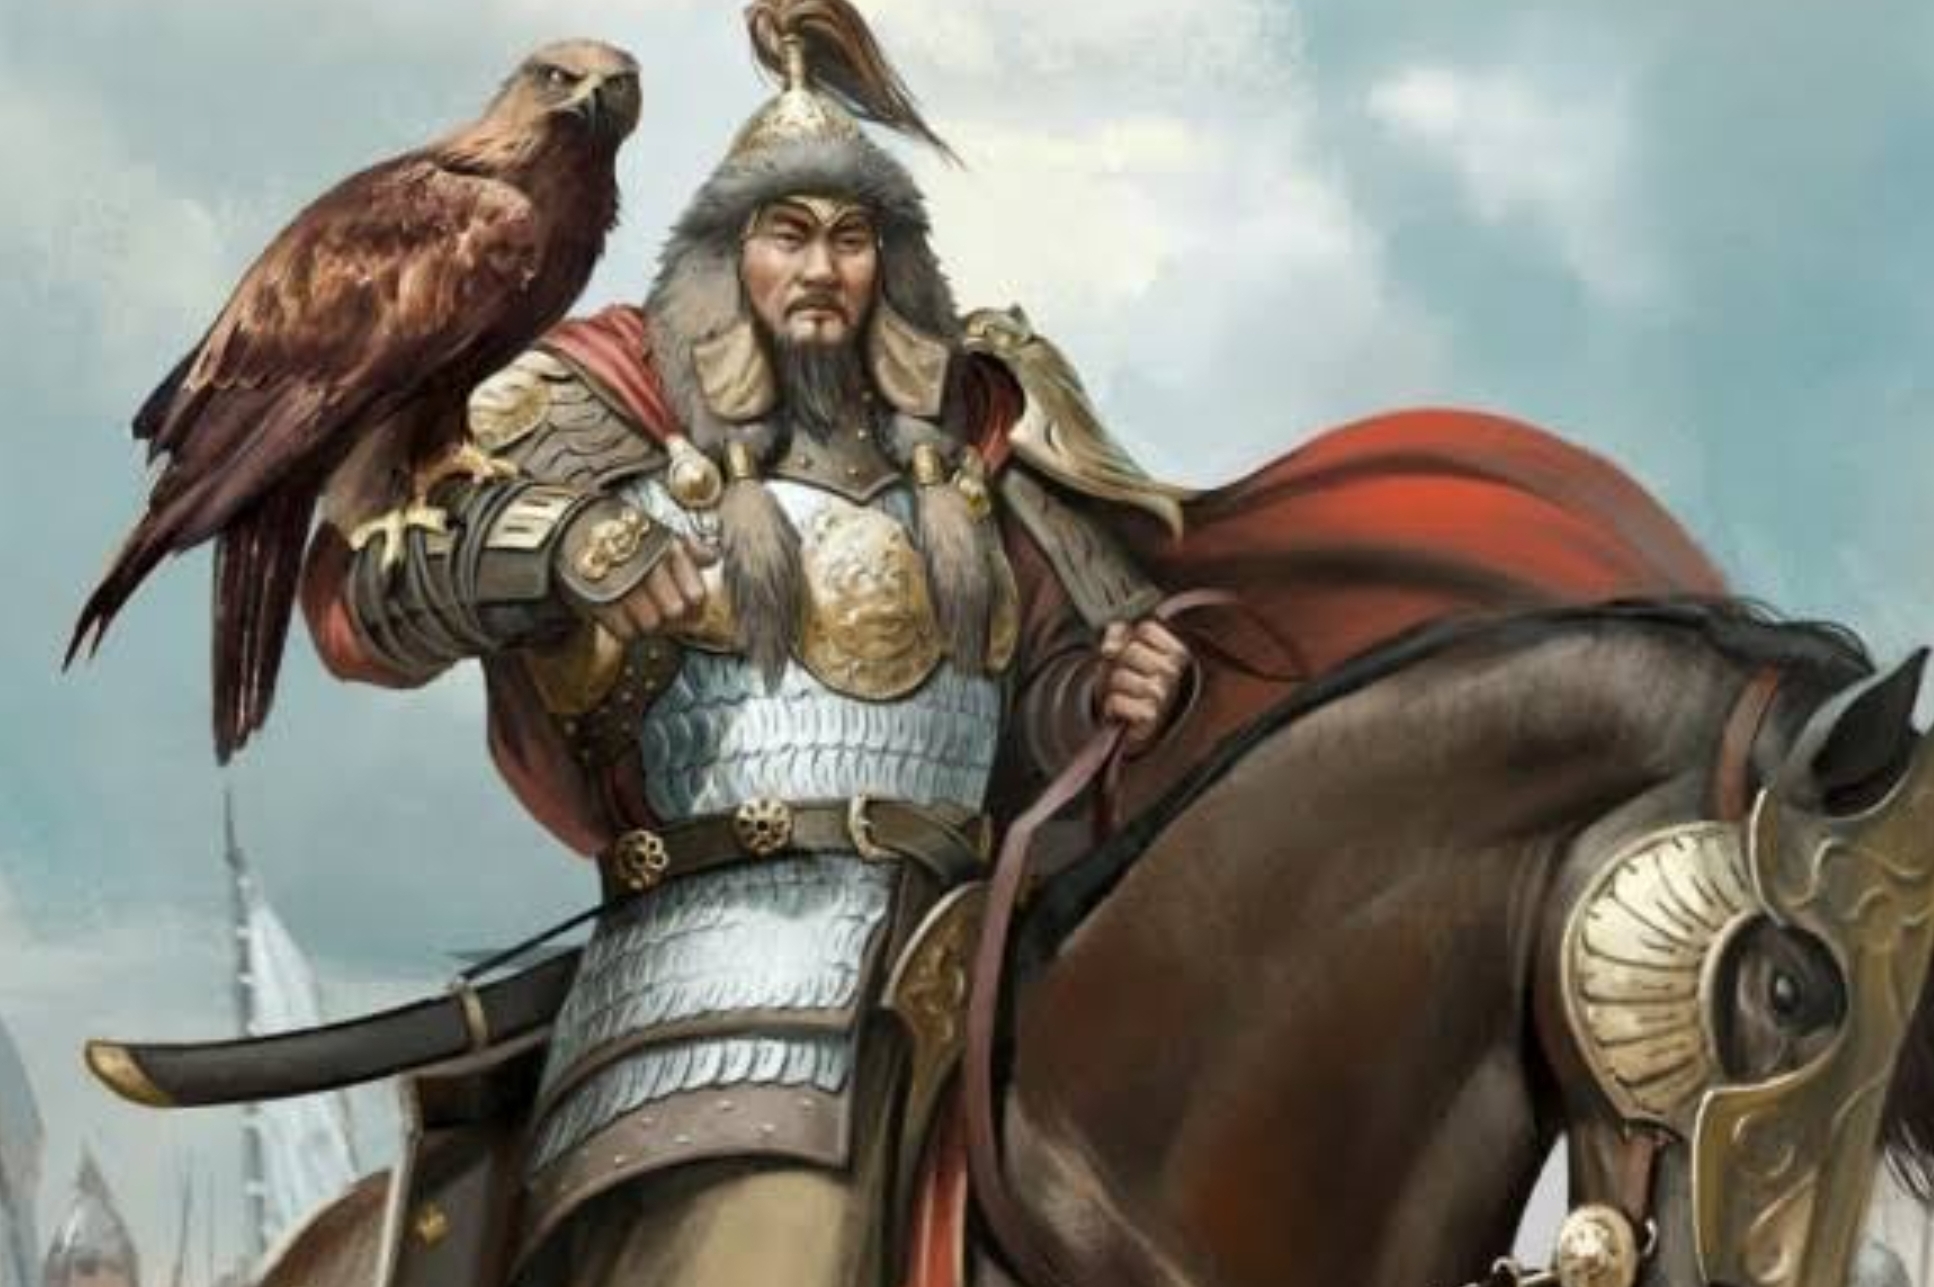 Benarkah Genghis Khan Pernah Meniduri Seribu Lebih Wanita, Miliki 16-17 Juta Keturunan?